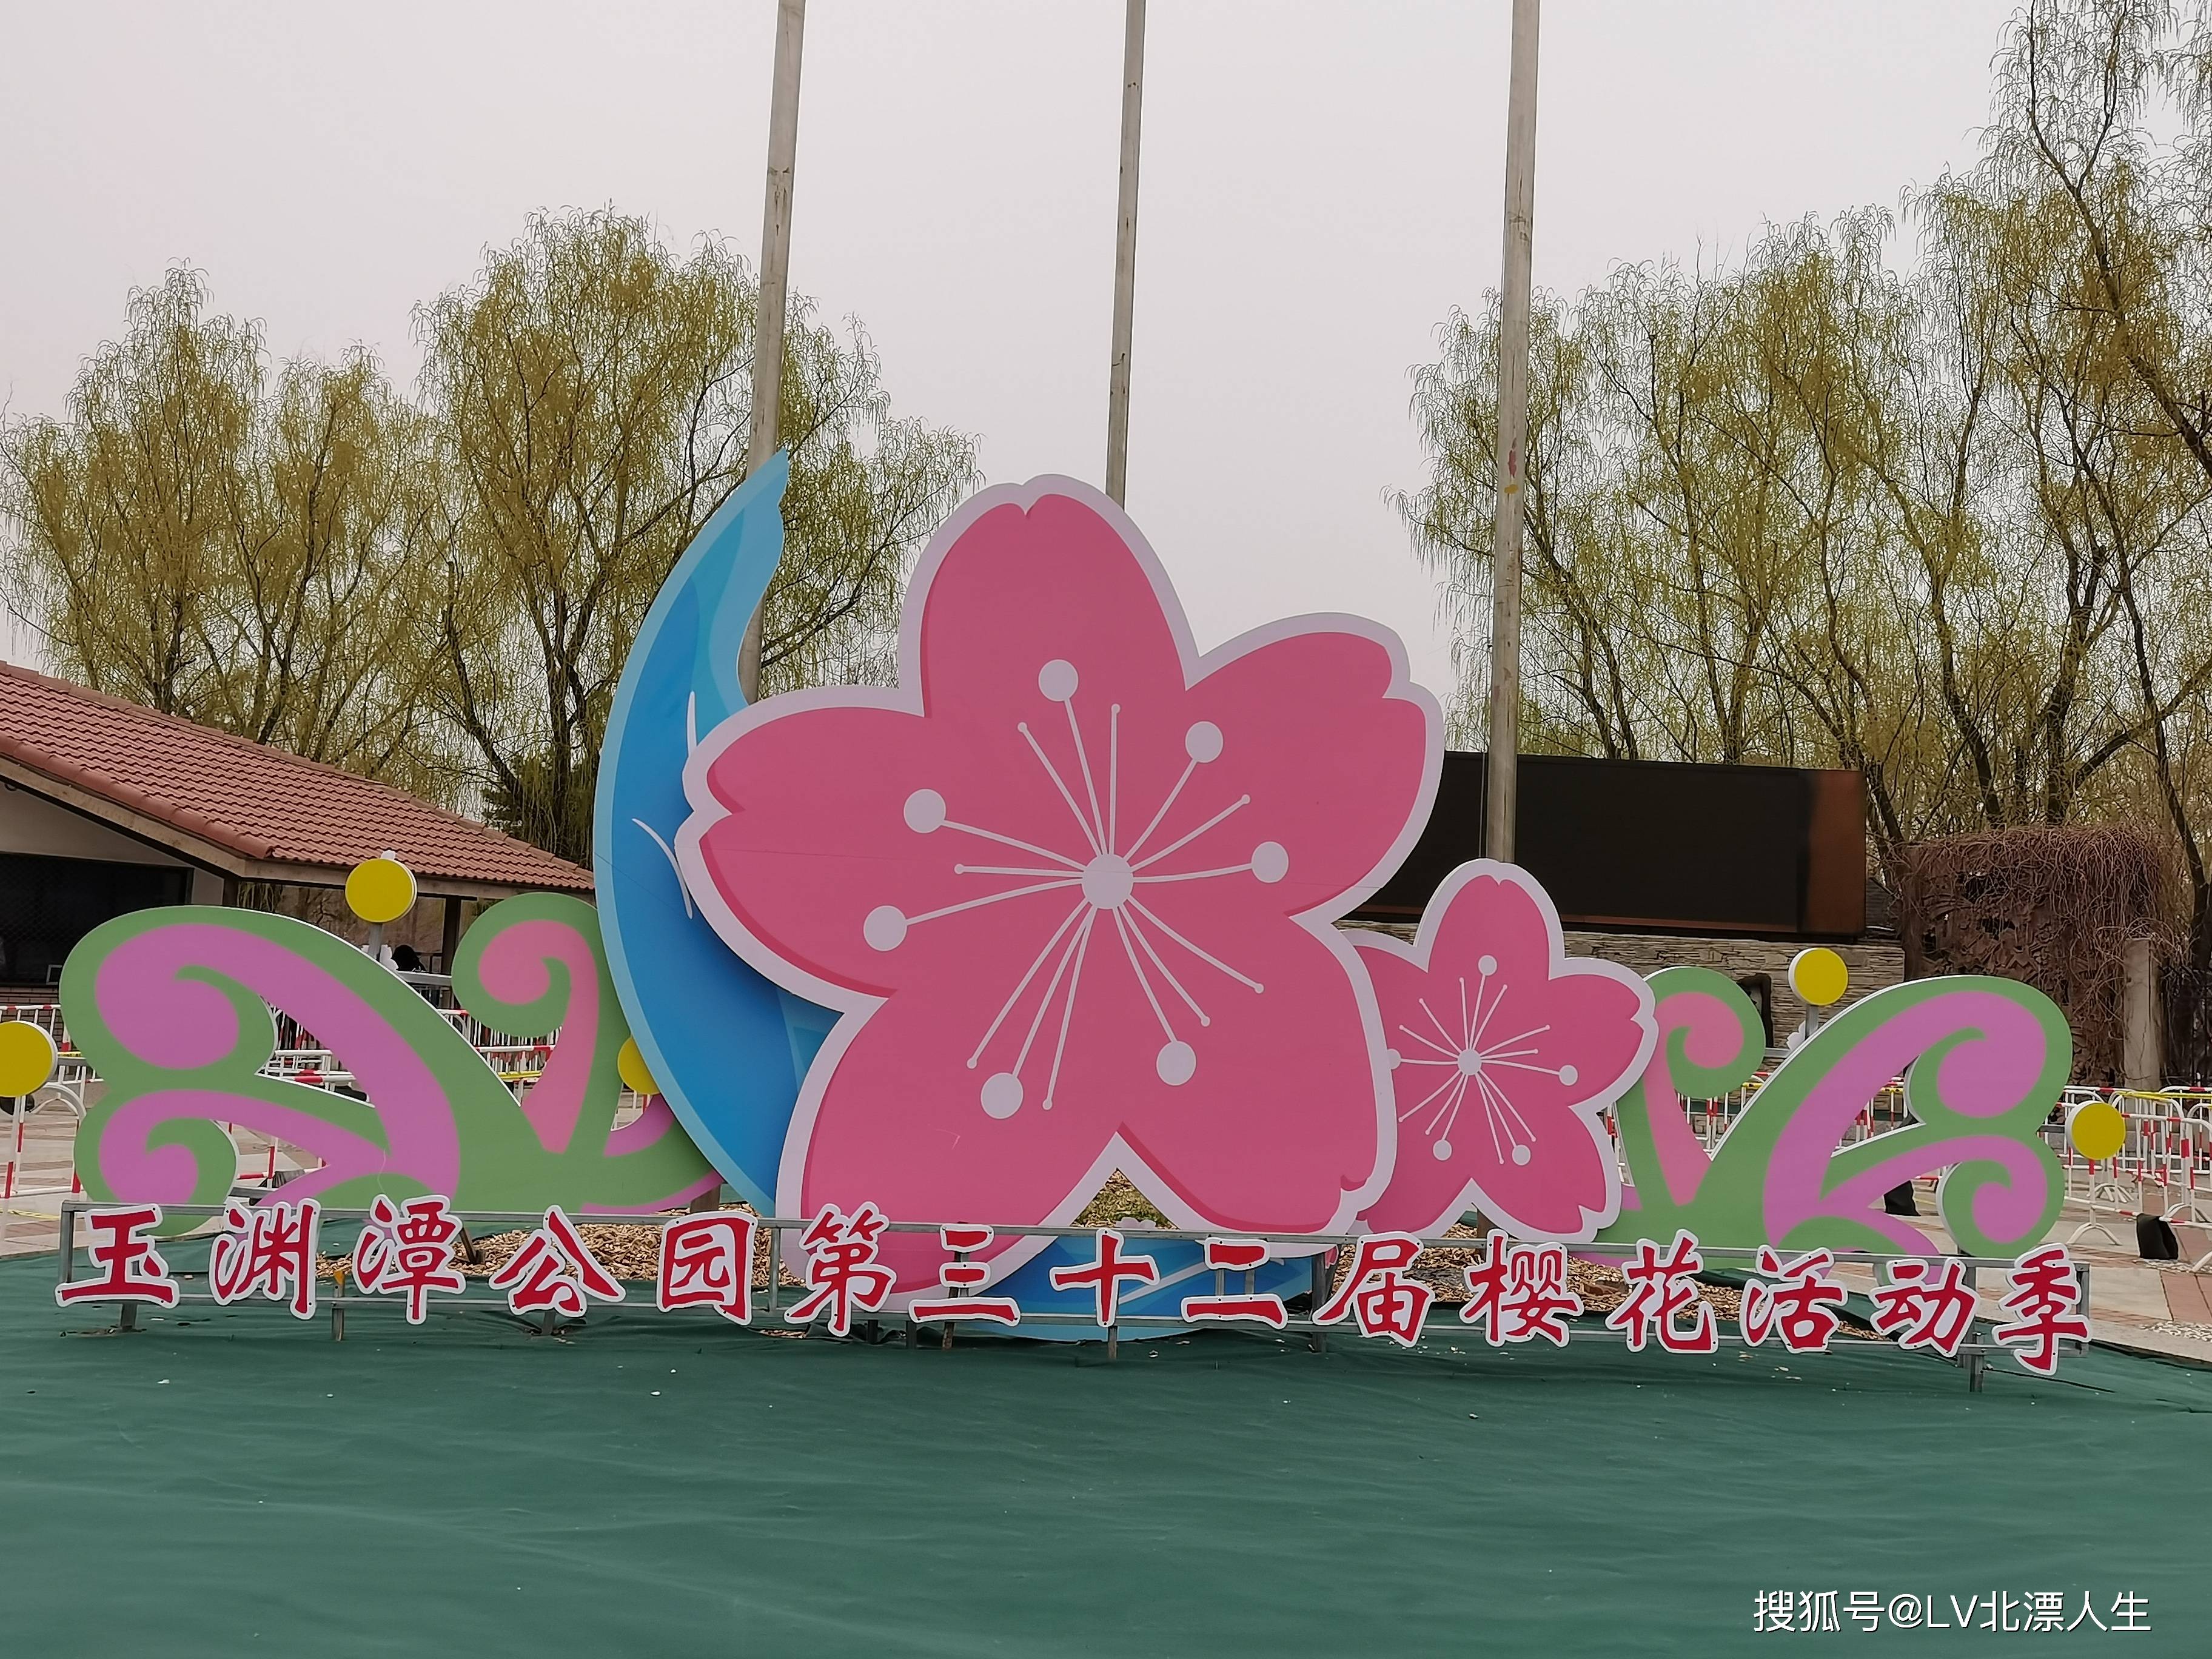 这里的樱花太美了，人山人海的玉渊潭公园第32届樱花节见闻